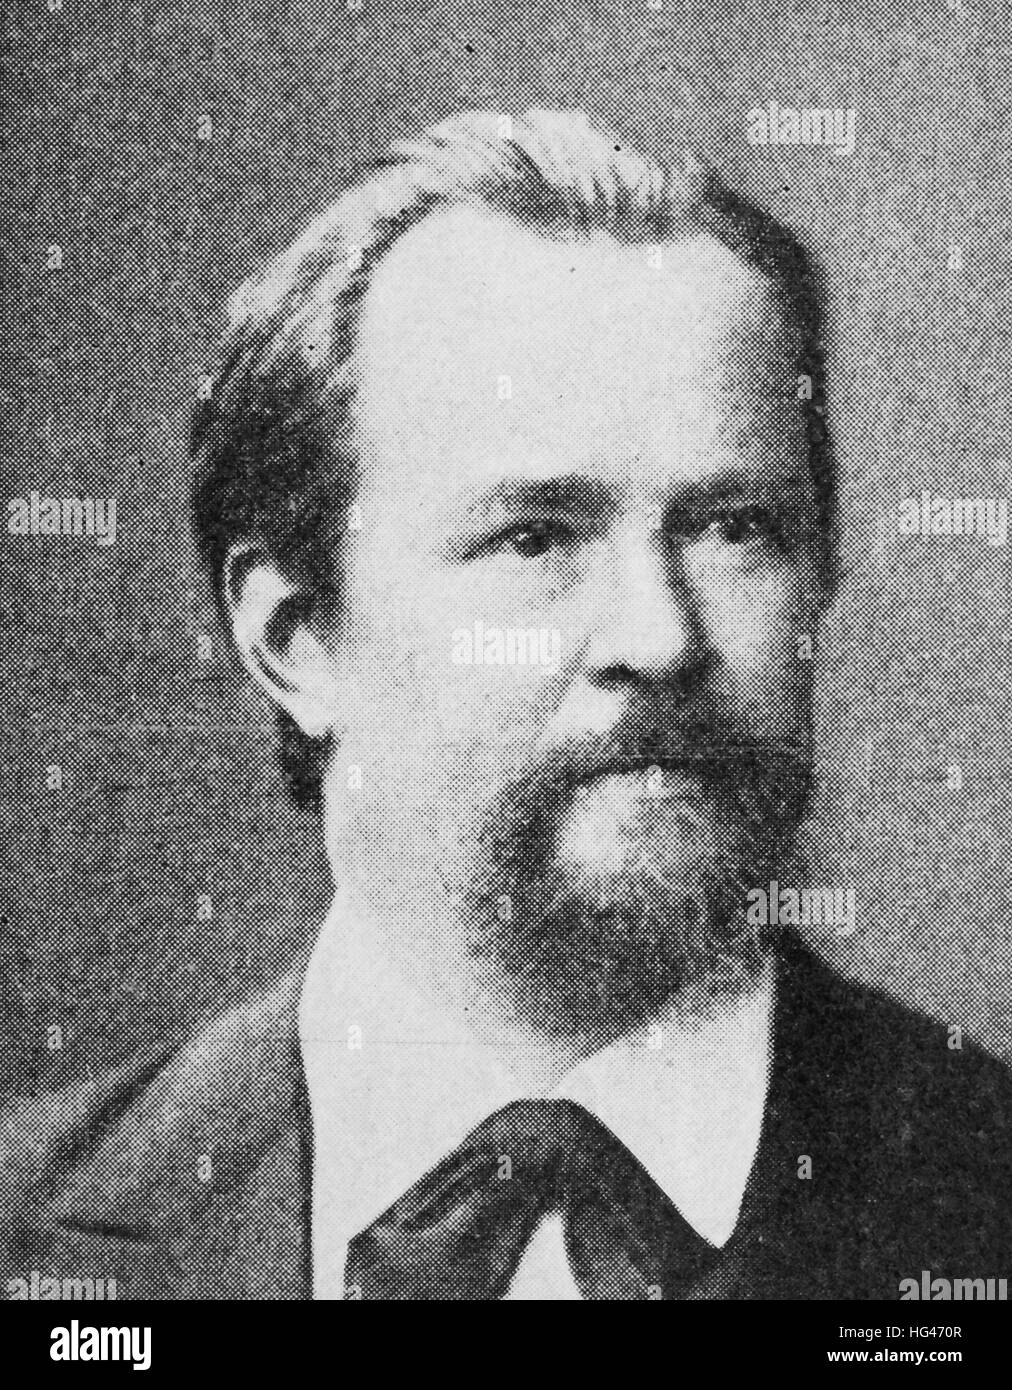 Karl Wilhelm Georg von Fritsch, war 11. November 1838 - 9. Januar 1906, ein deutscher Geologe und Paläontologe, Reproduktion eines Fotos aus dem Jahr 1895, Digital verbessert Stockfoto